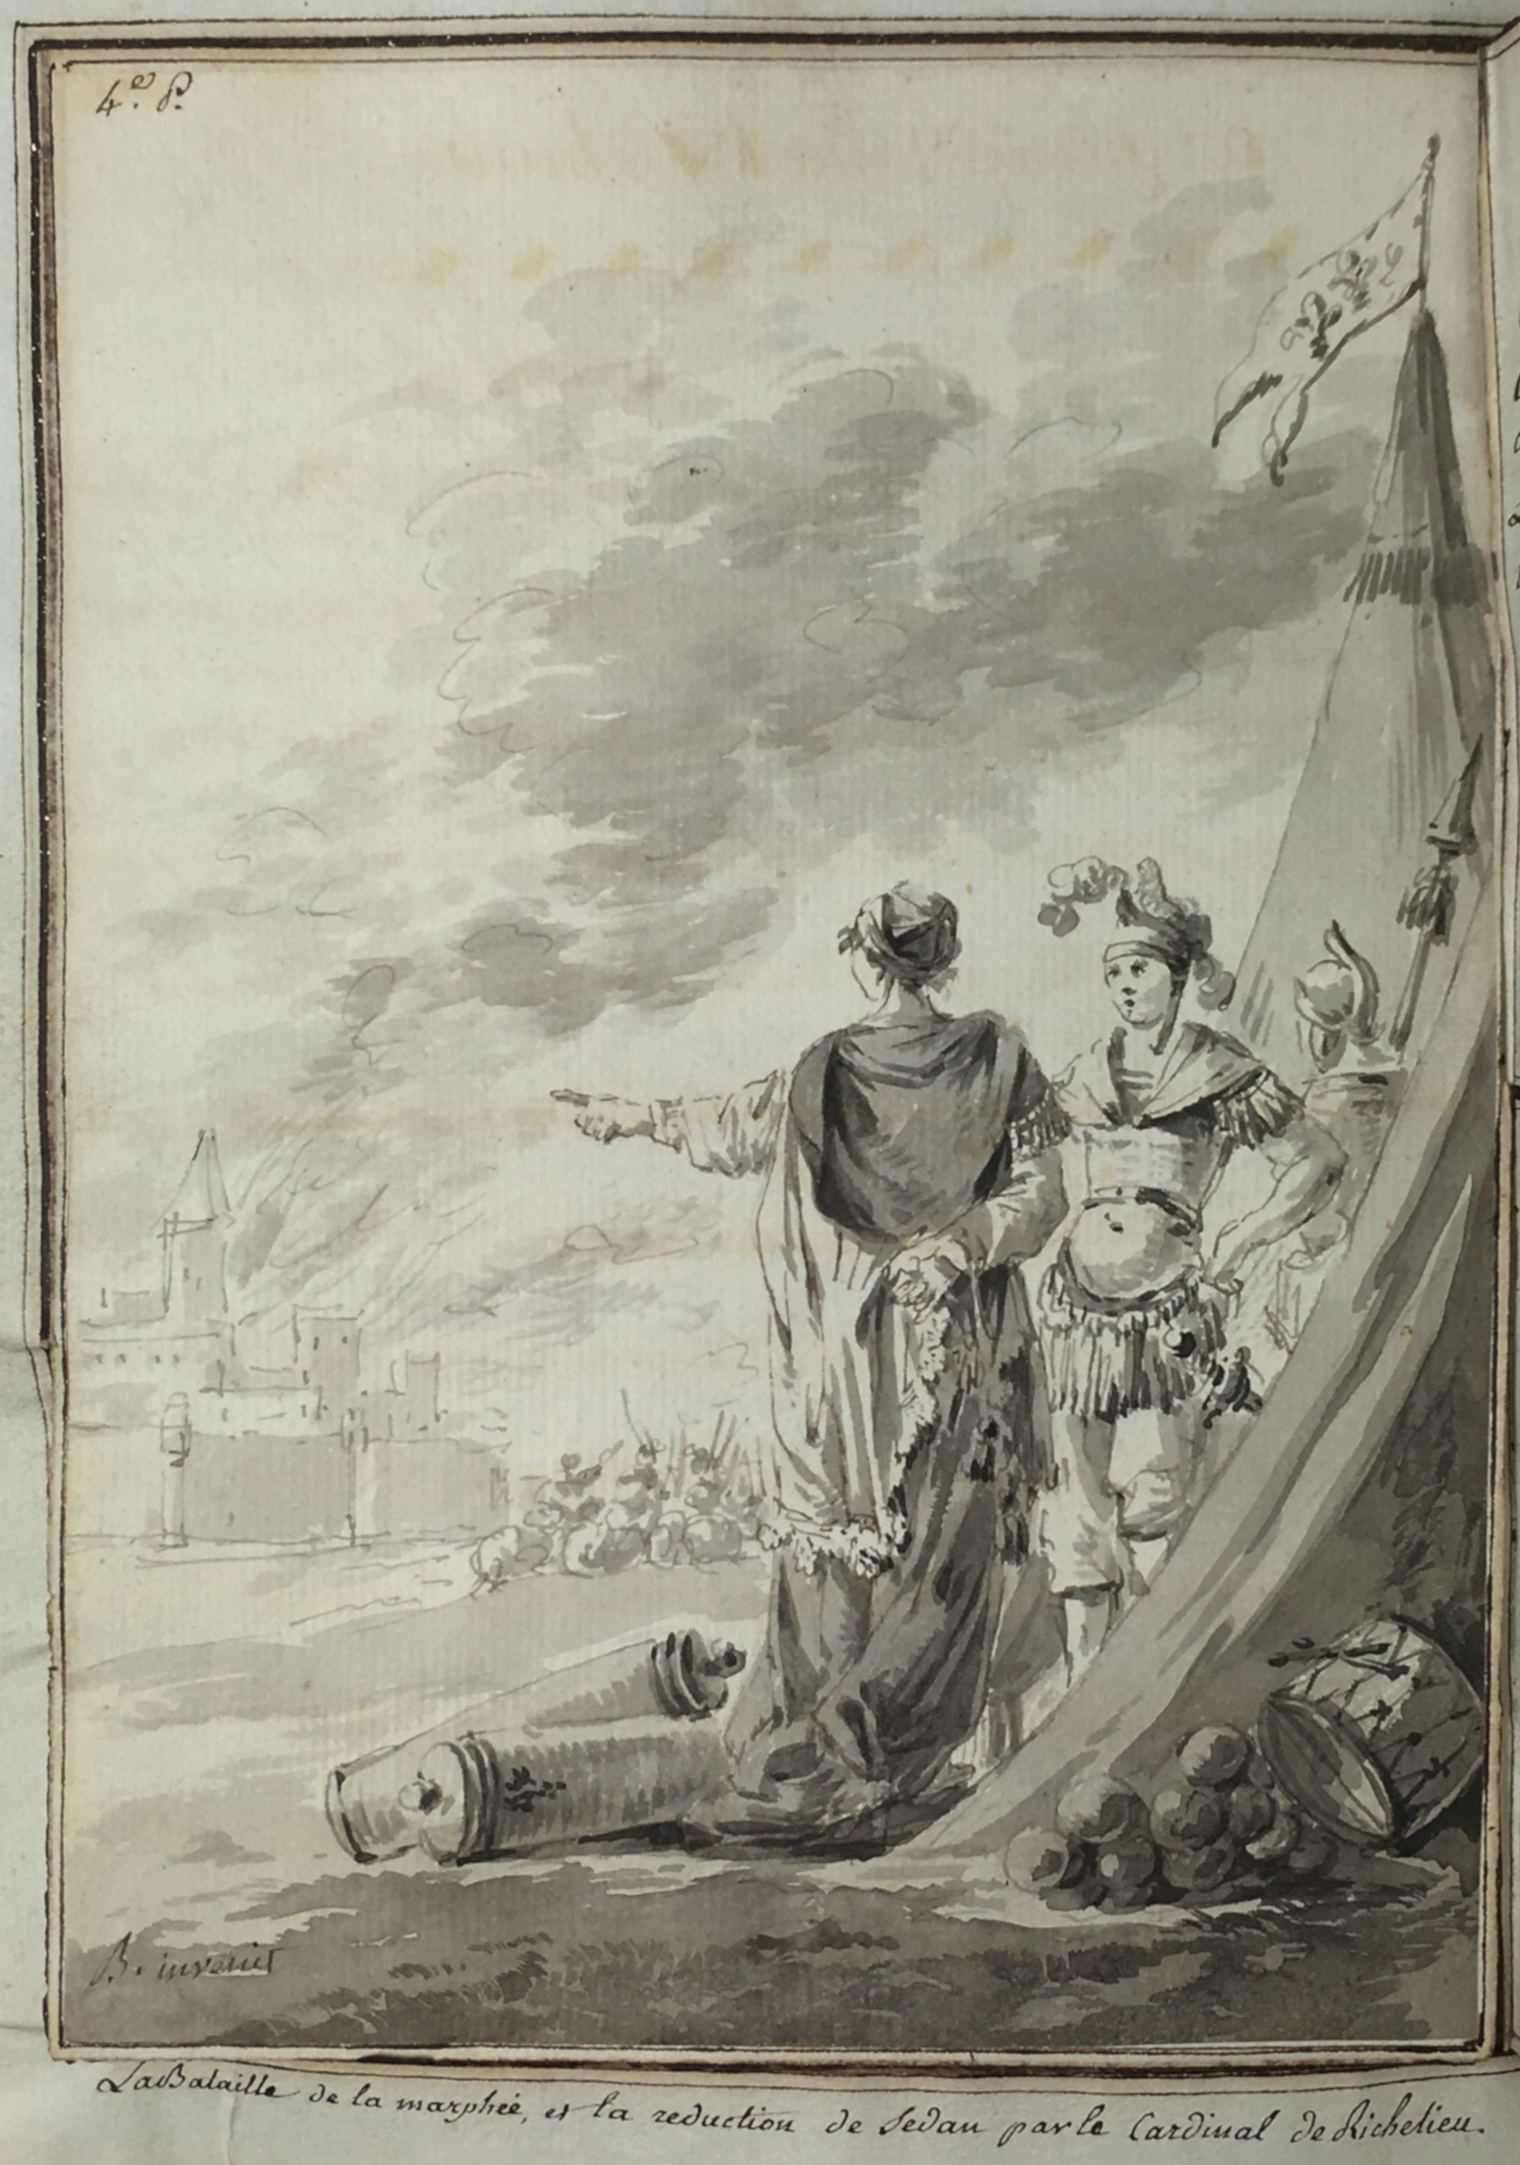 © La bataille de la Marfée et la réduction de Sedan par le cardinal de Richelieu, La Turenneïde coll. MGD